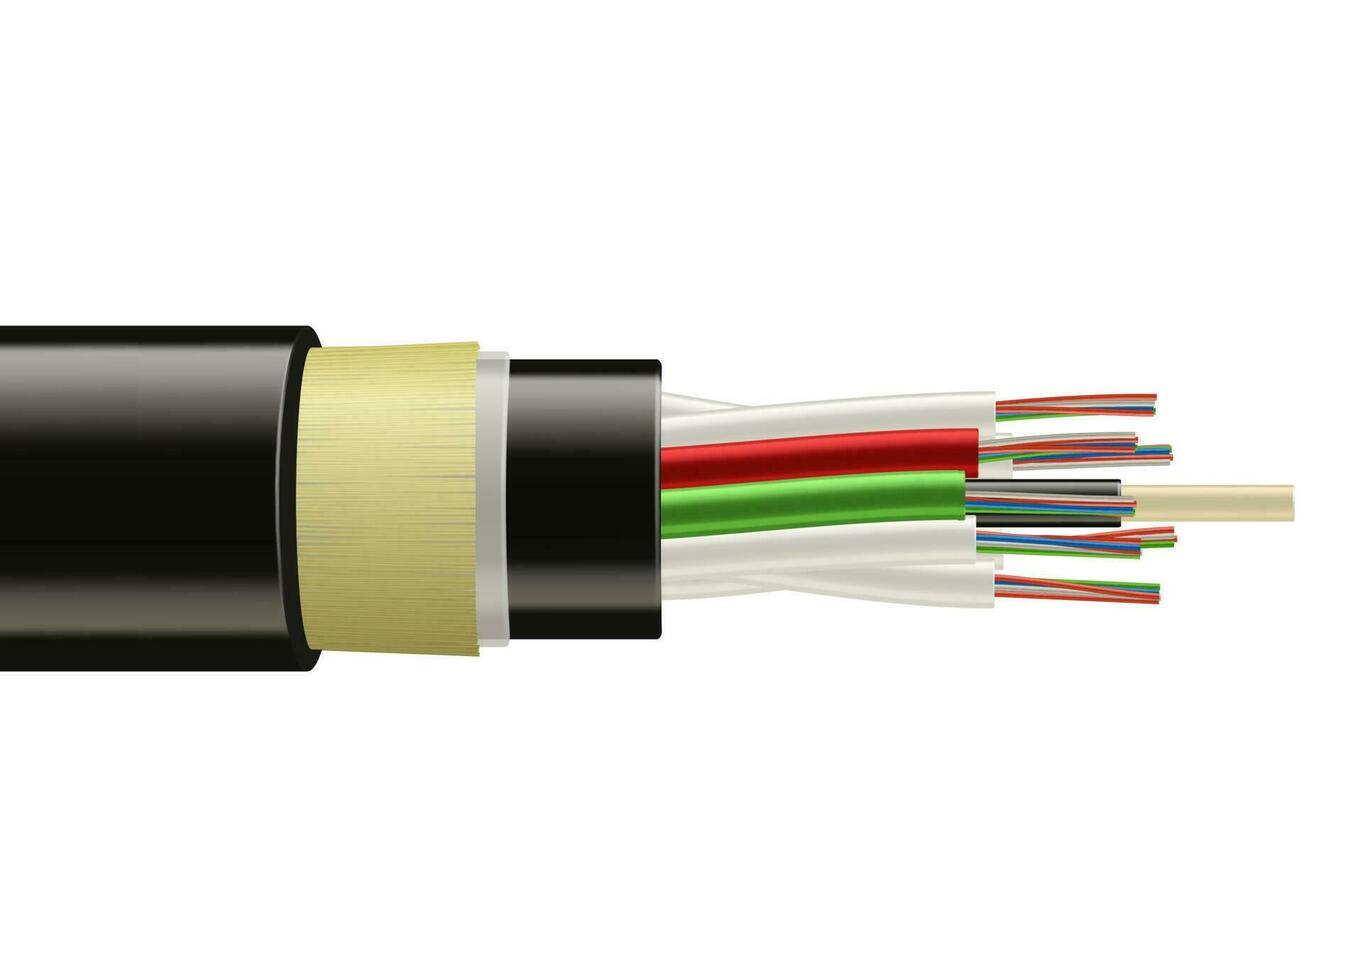 Ballaststoff Optik fest Kabel, Breitband Internet Kabel vektor